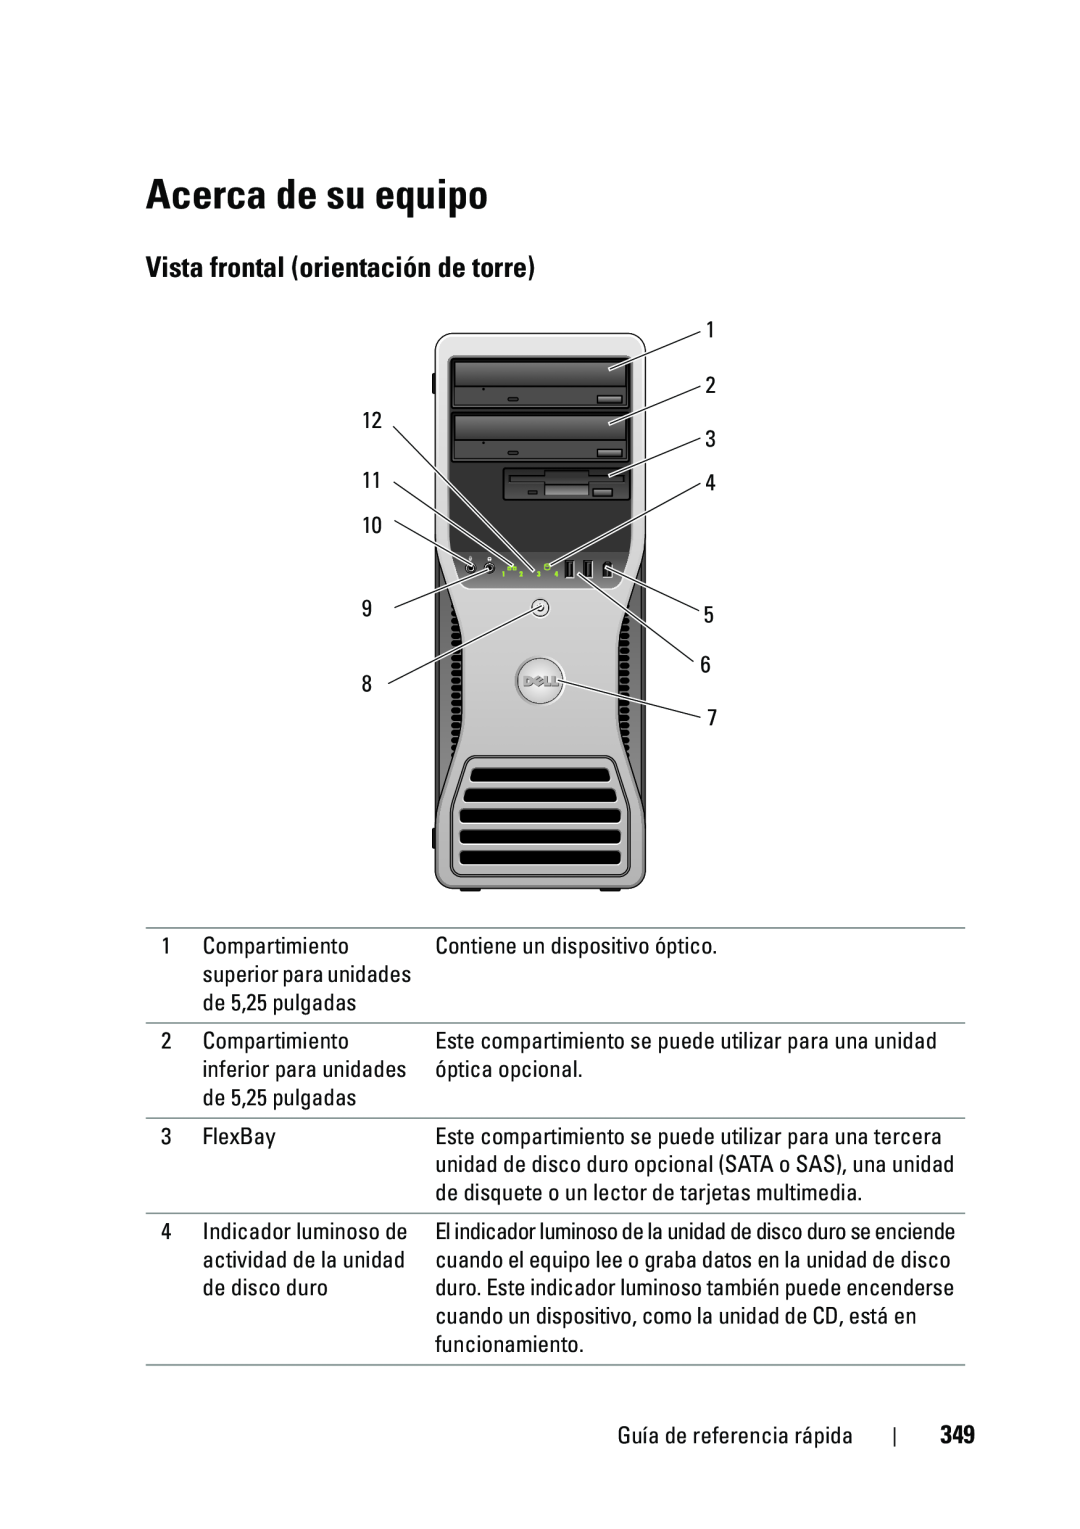 Dell T5400 manual Acerca de su equipo, Vista frontal orientación de torre 